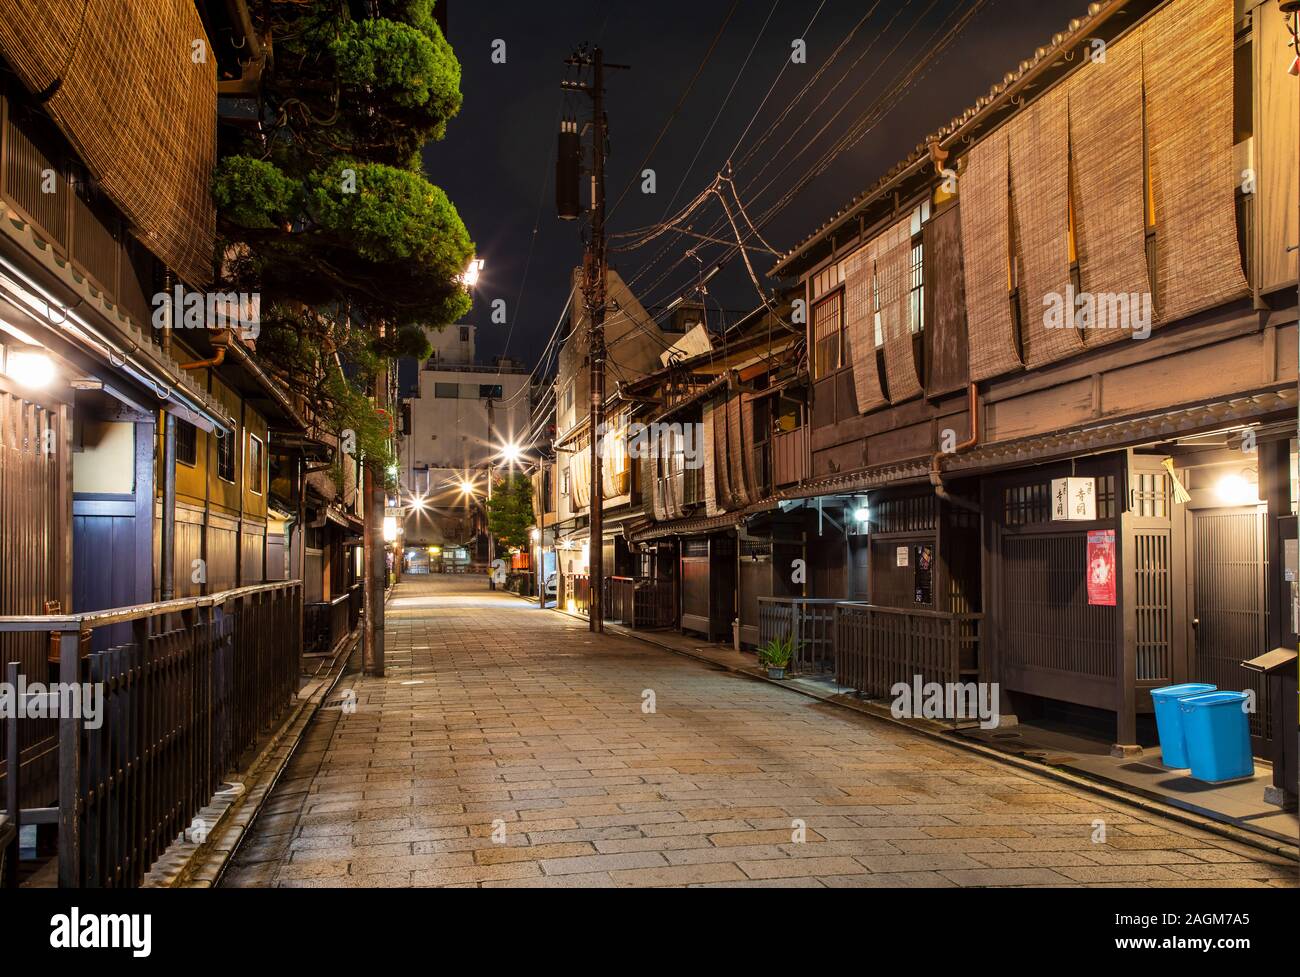 KYOTO, Japan - 17. November 2019: Gion ist die berühmteste Geisha Bezirk mit hoher Konzentration von traditionellen Holz- mechant Häuser. Stockfoto